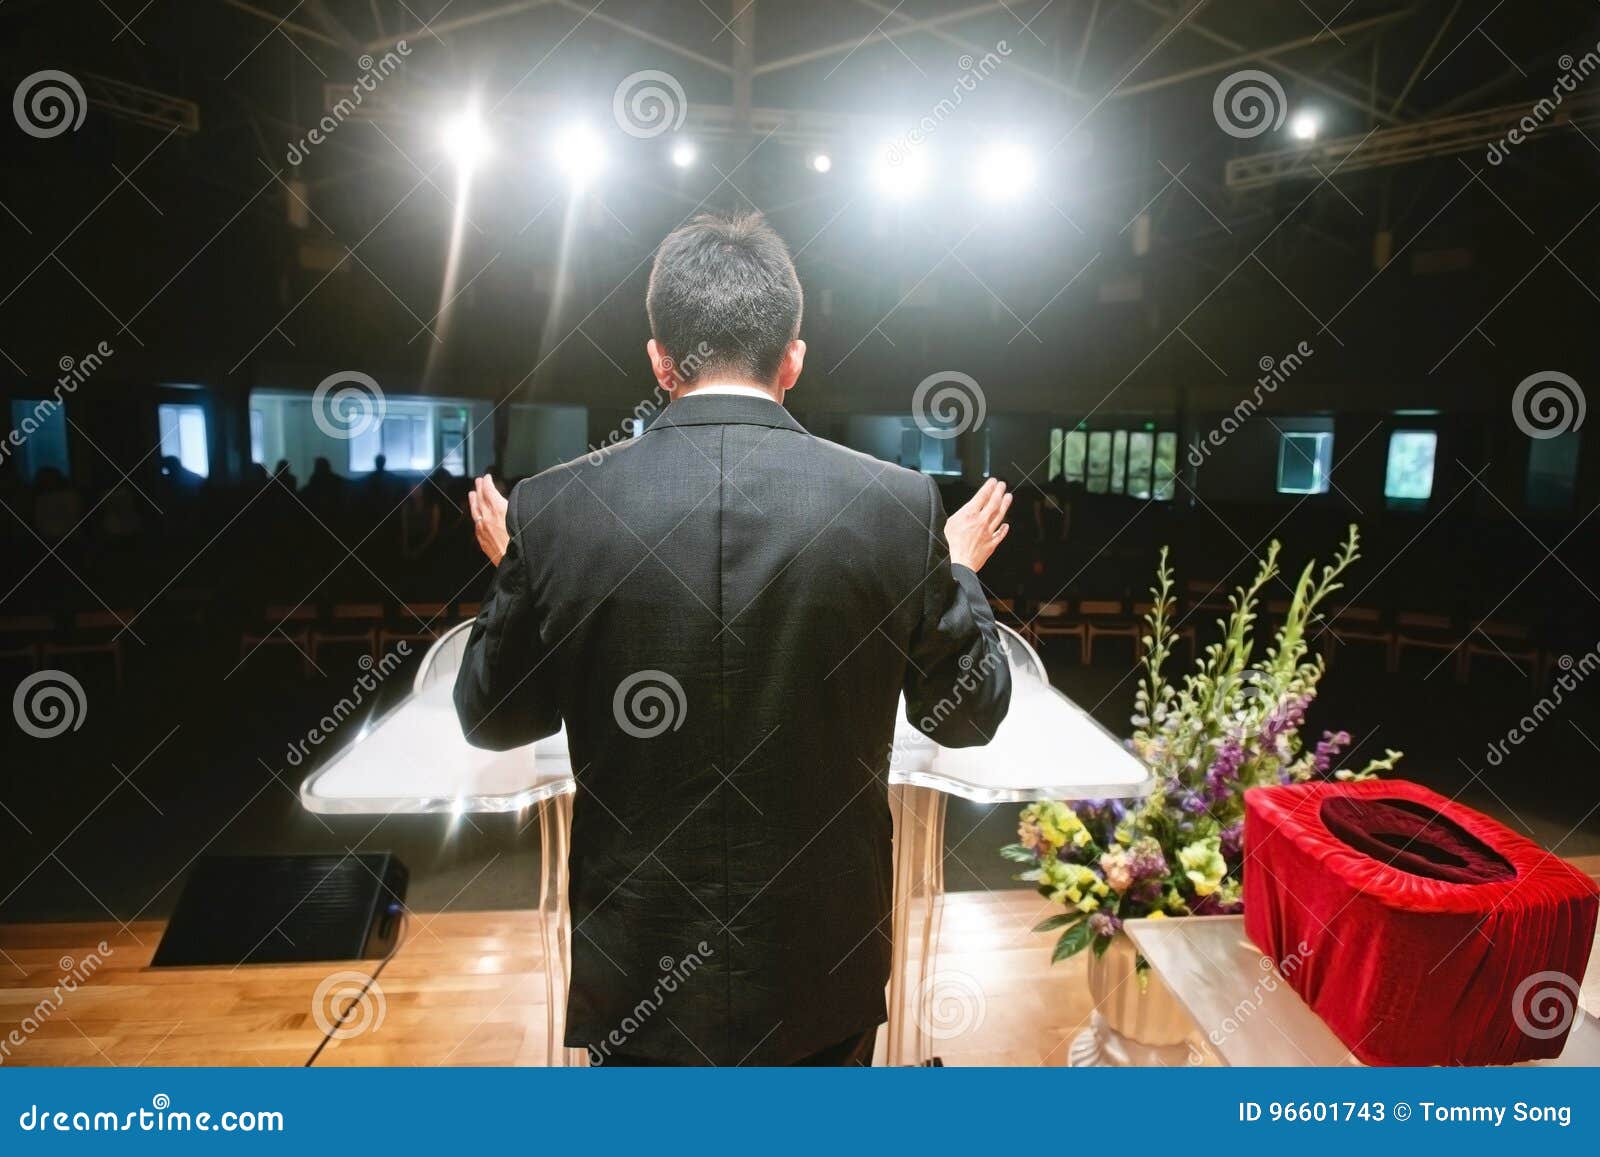 pastor praying for congregation